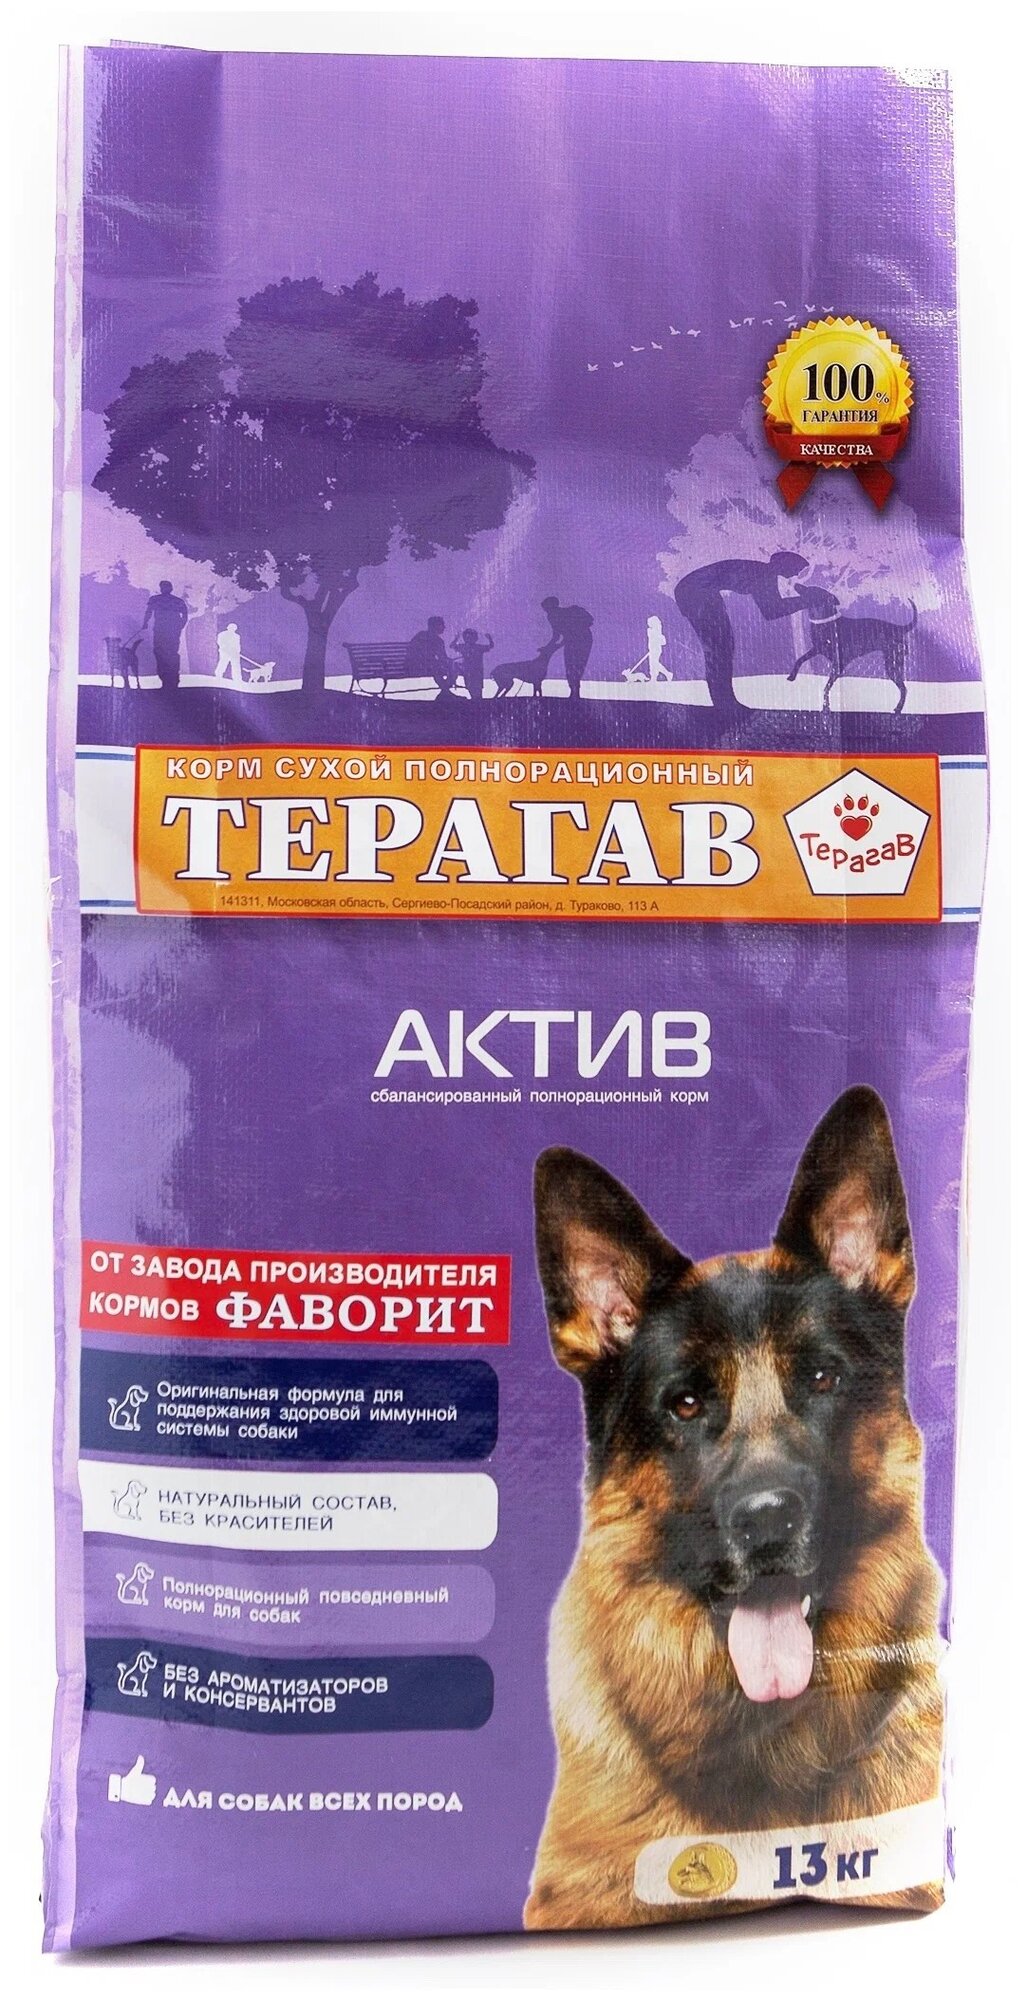 Терагав актив для активных взрослых собак всех пород (13 кг)